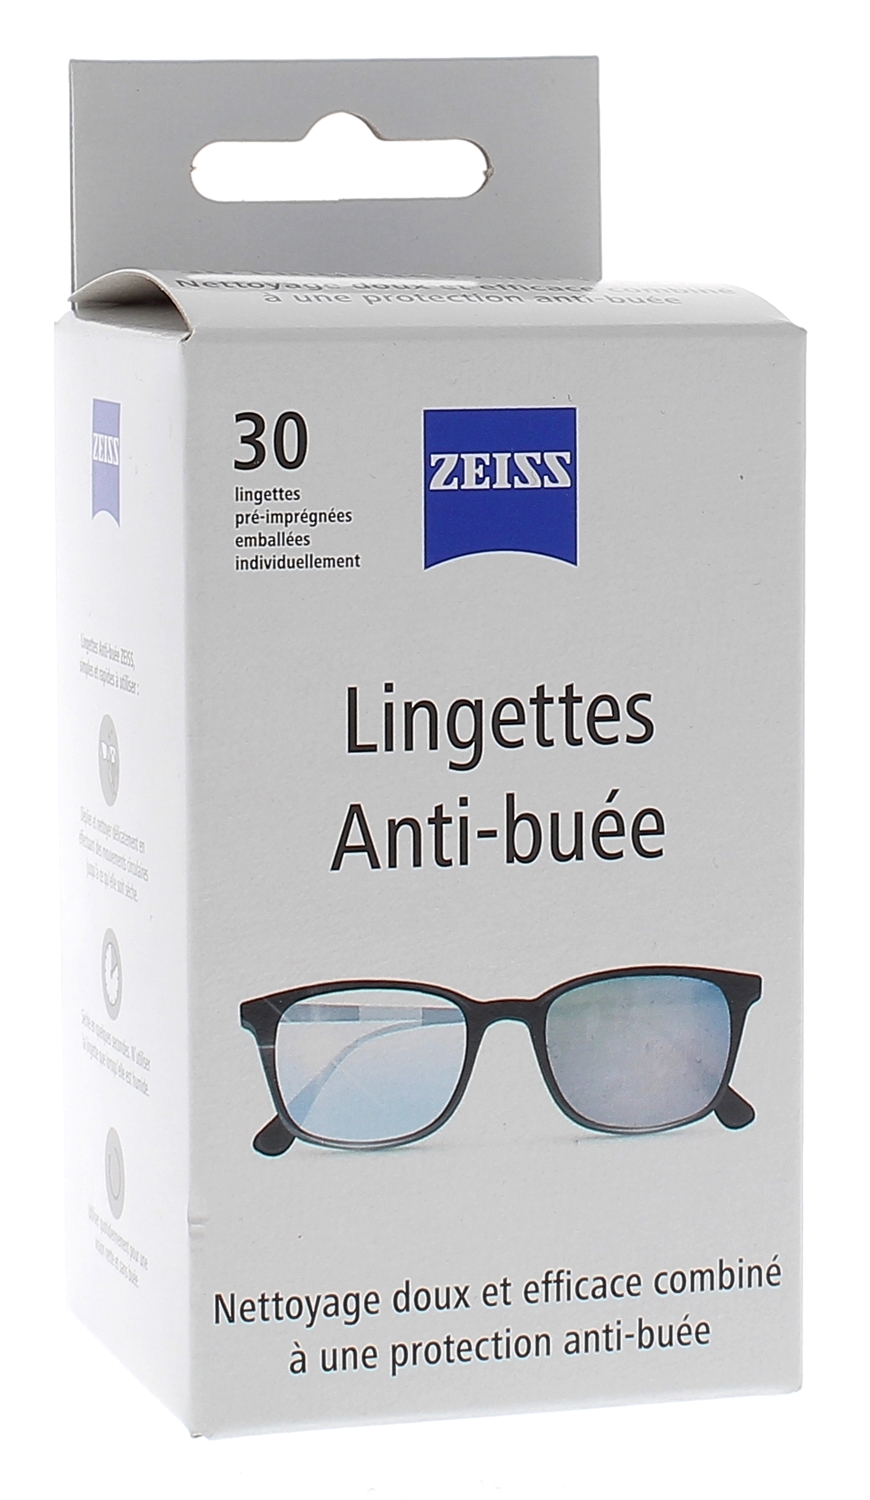 Lingettes antibuée pour lunettes Zeiss - boîte de 30 lingettes